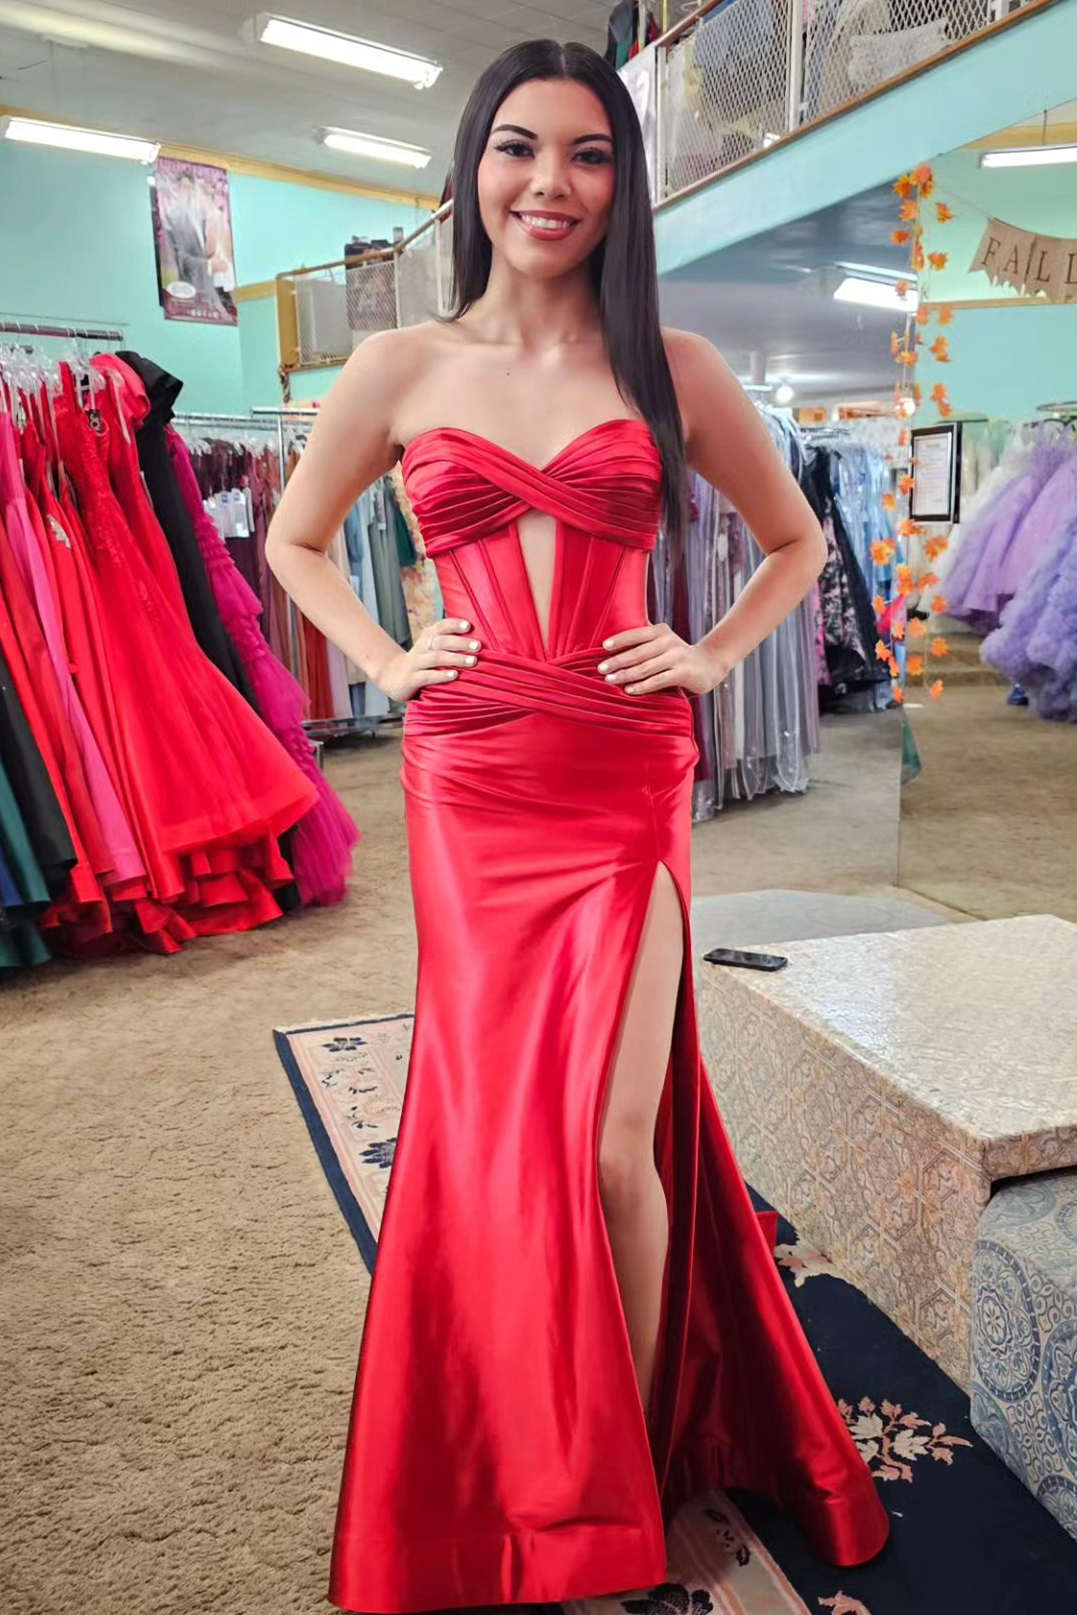 Brylee|Black Sweetheart Satin Mermaid Long Prom Dress